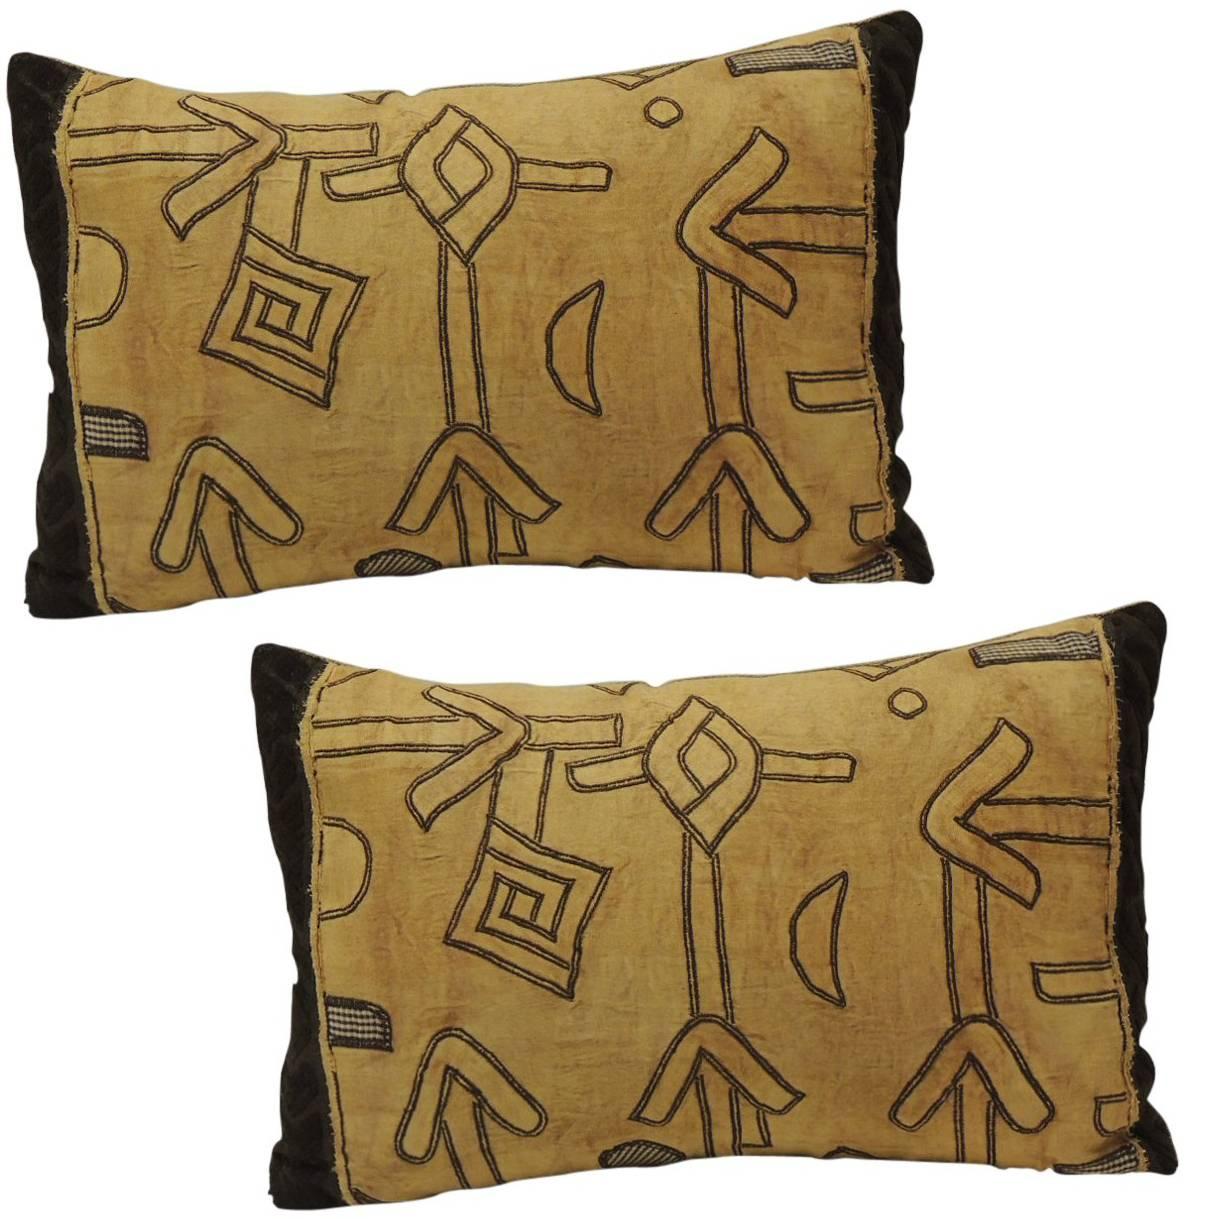 Pair of African Applique Kuba Lumbar Textile Textured Finish Decorative Pillows